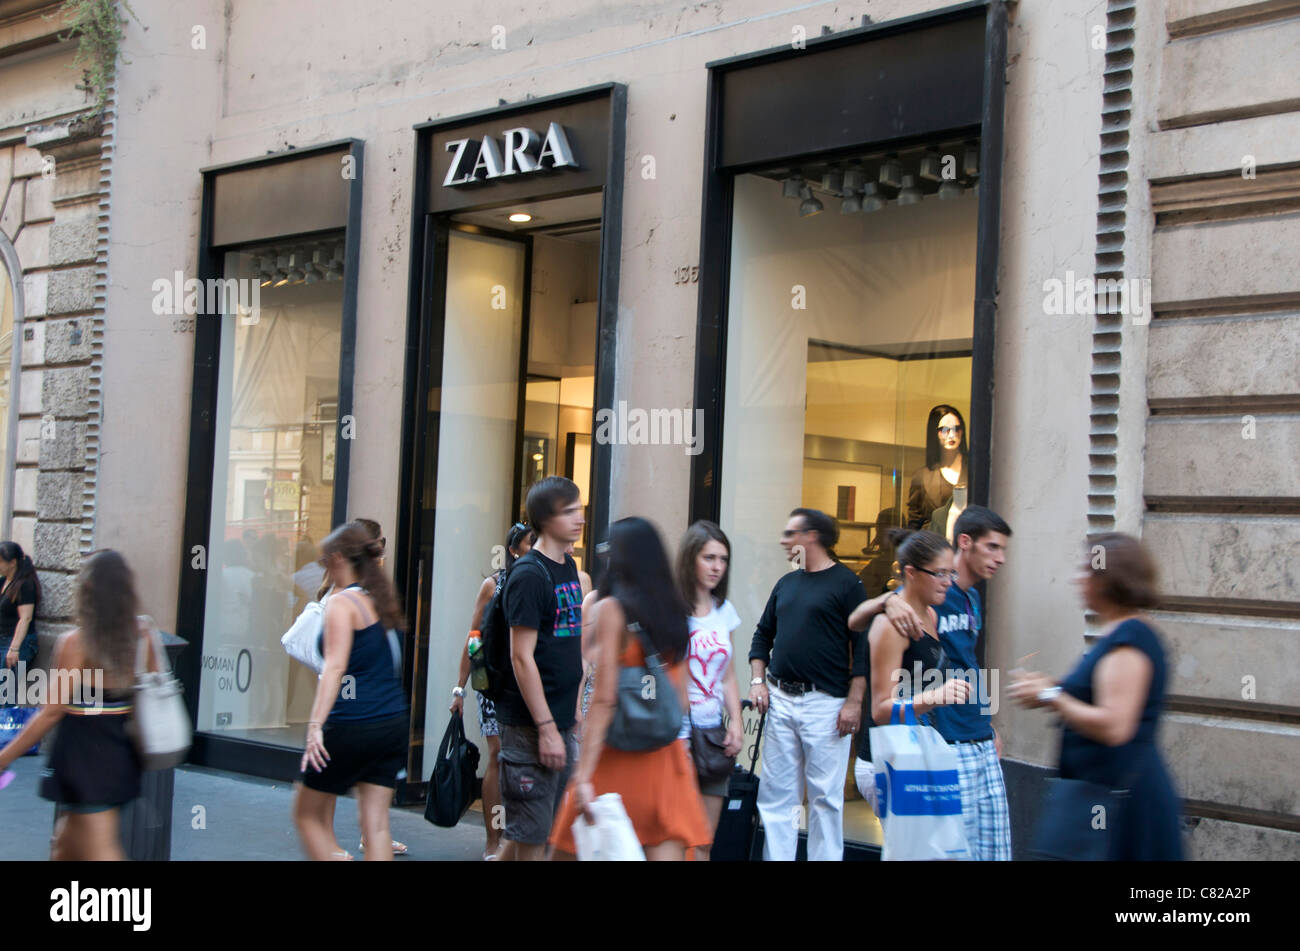 Zara stores -Fotos und -Bildmaterial in hoher Auflösung – Alamy